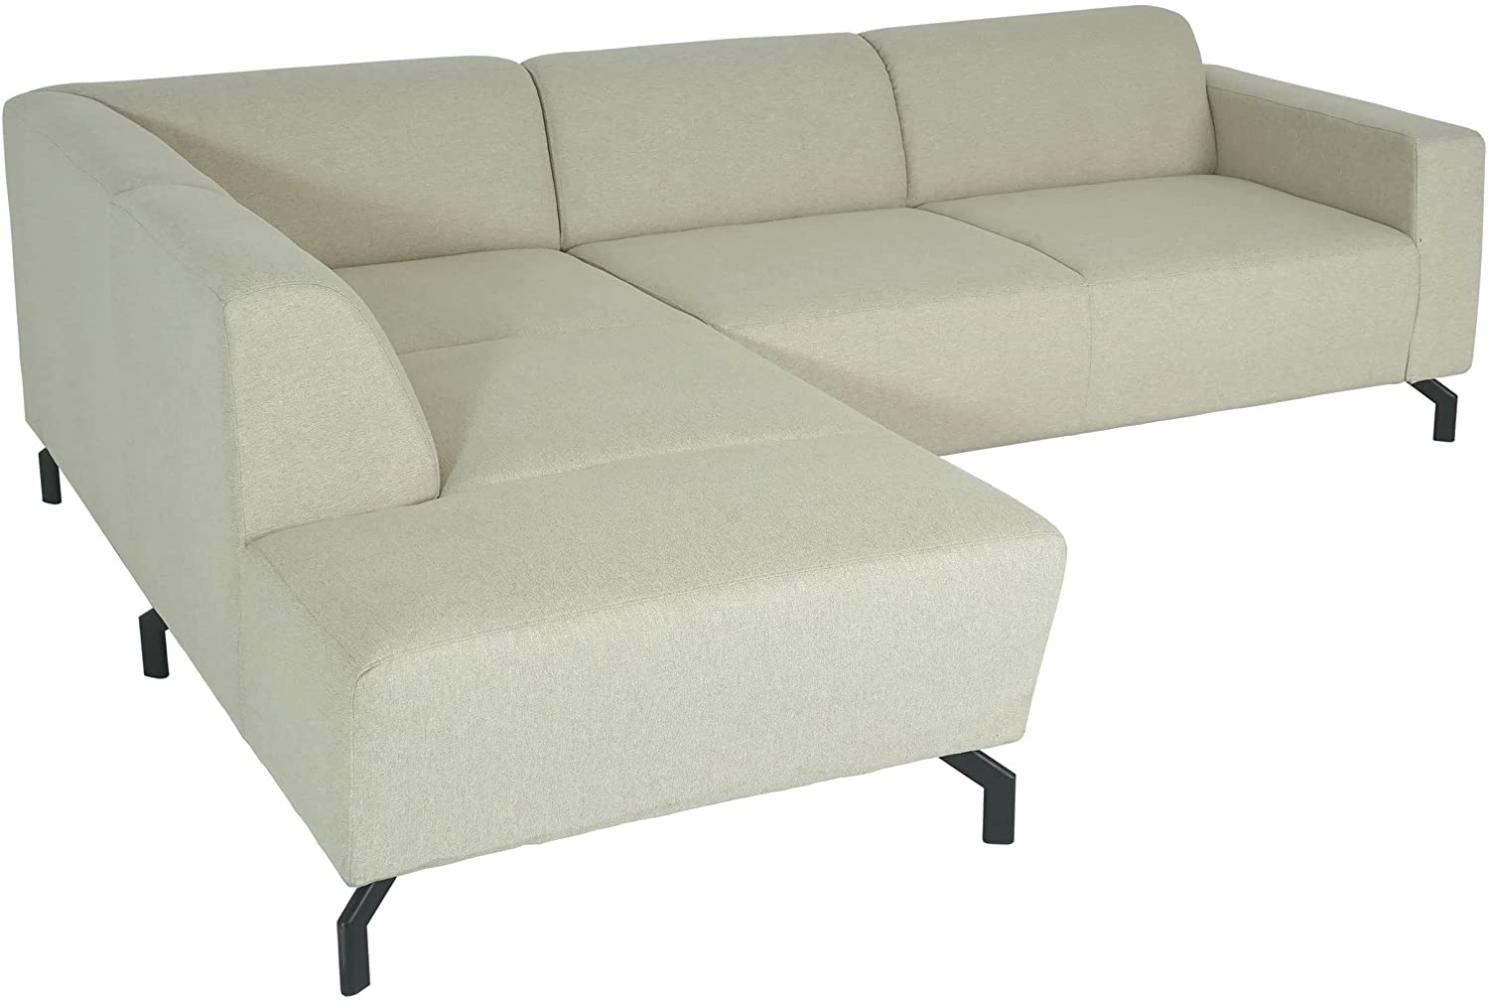 Ecksofa HWC-J60, Couch Sofa mit Ottomane links, Made in EU, wasserabweisend 247cm ~ Stoff/Textil sand-braun Bild 1